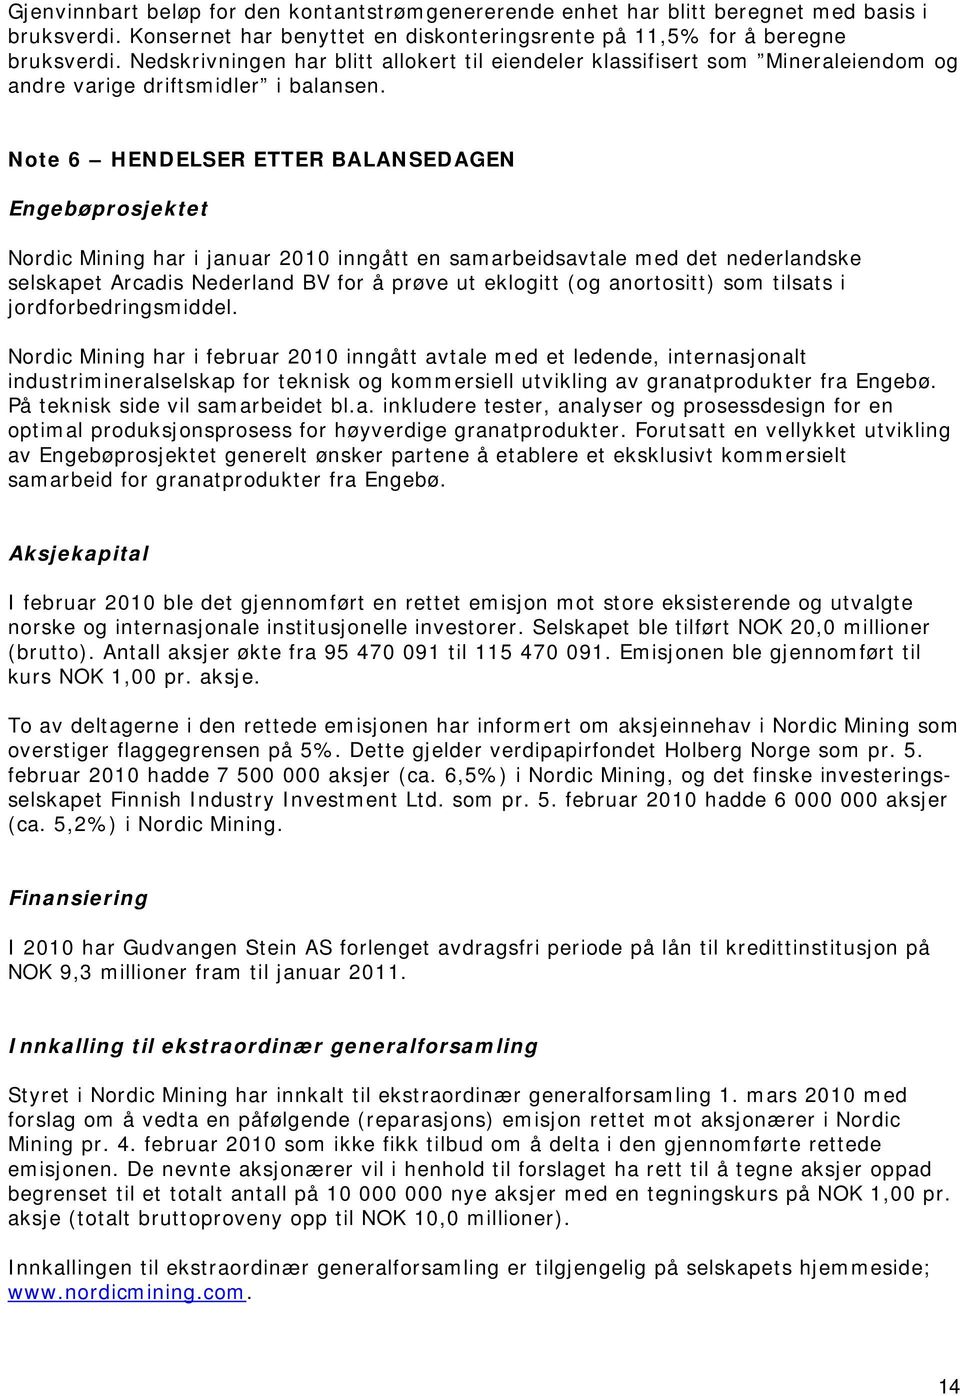 Note 6 HENDELSER ETTER BALANSEDAGEN Engebøprosjektet Nordic Mining har i januar 2010 inngått en samarbeidsavtale med det nederlandske selskapet Arcadis Nederland BV for å prøve ut eklogitt (og